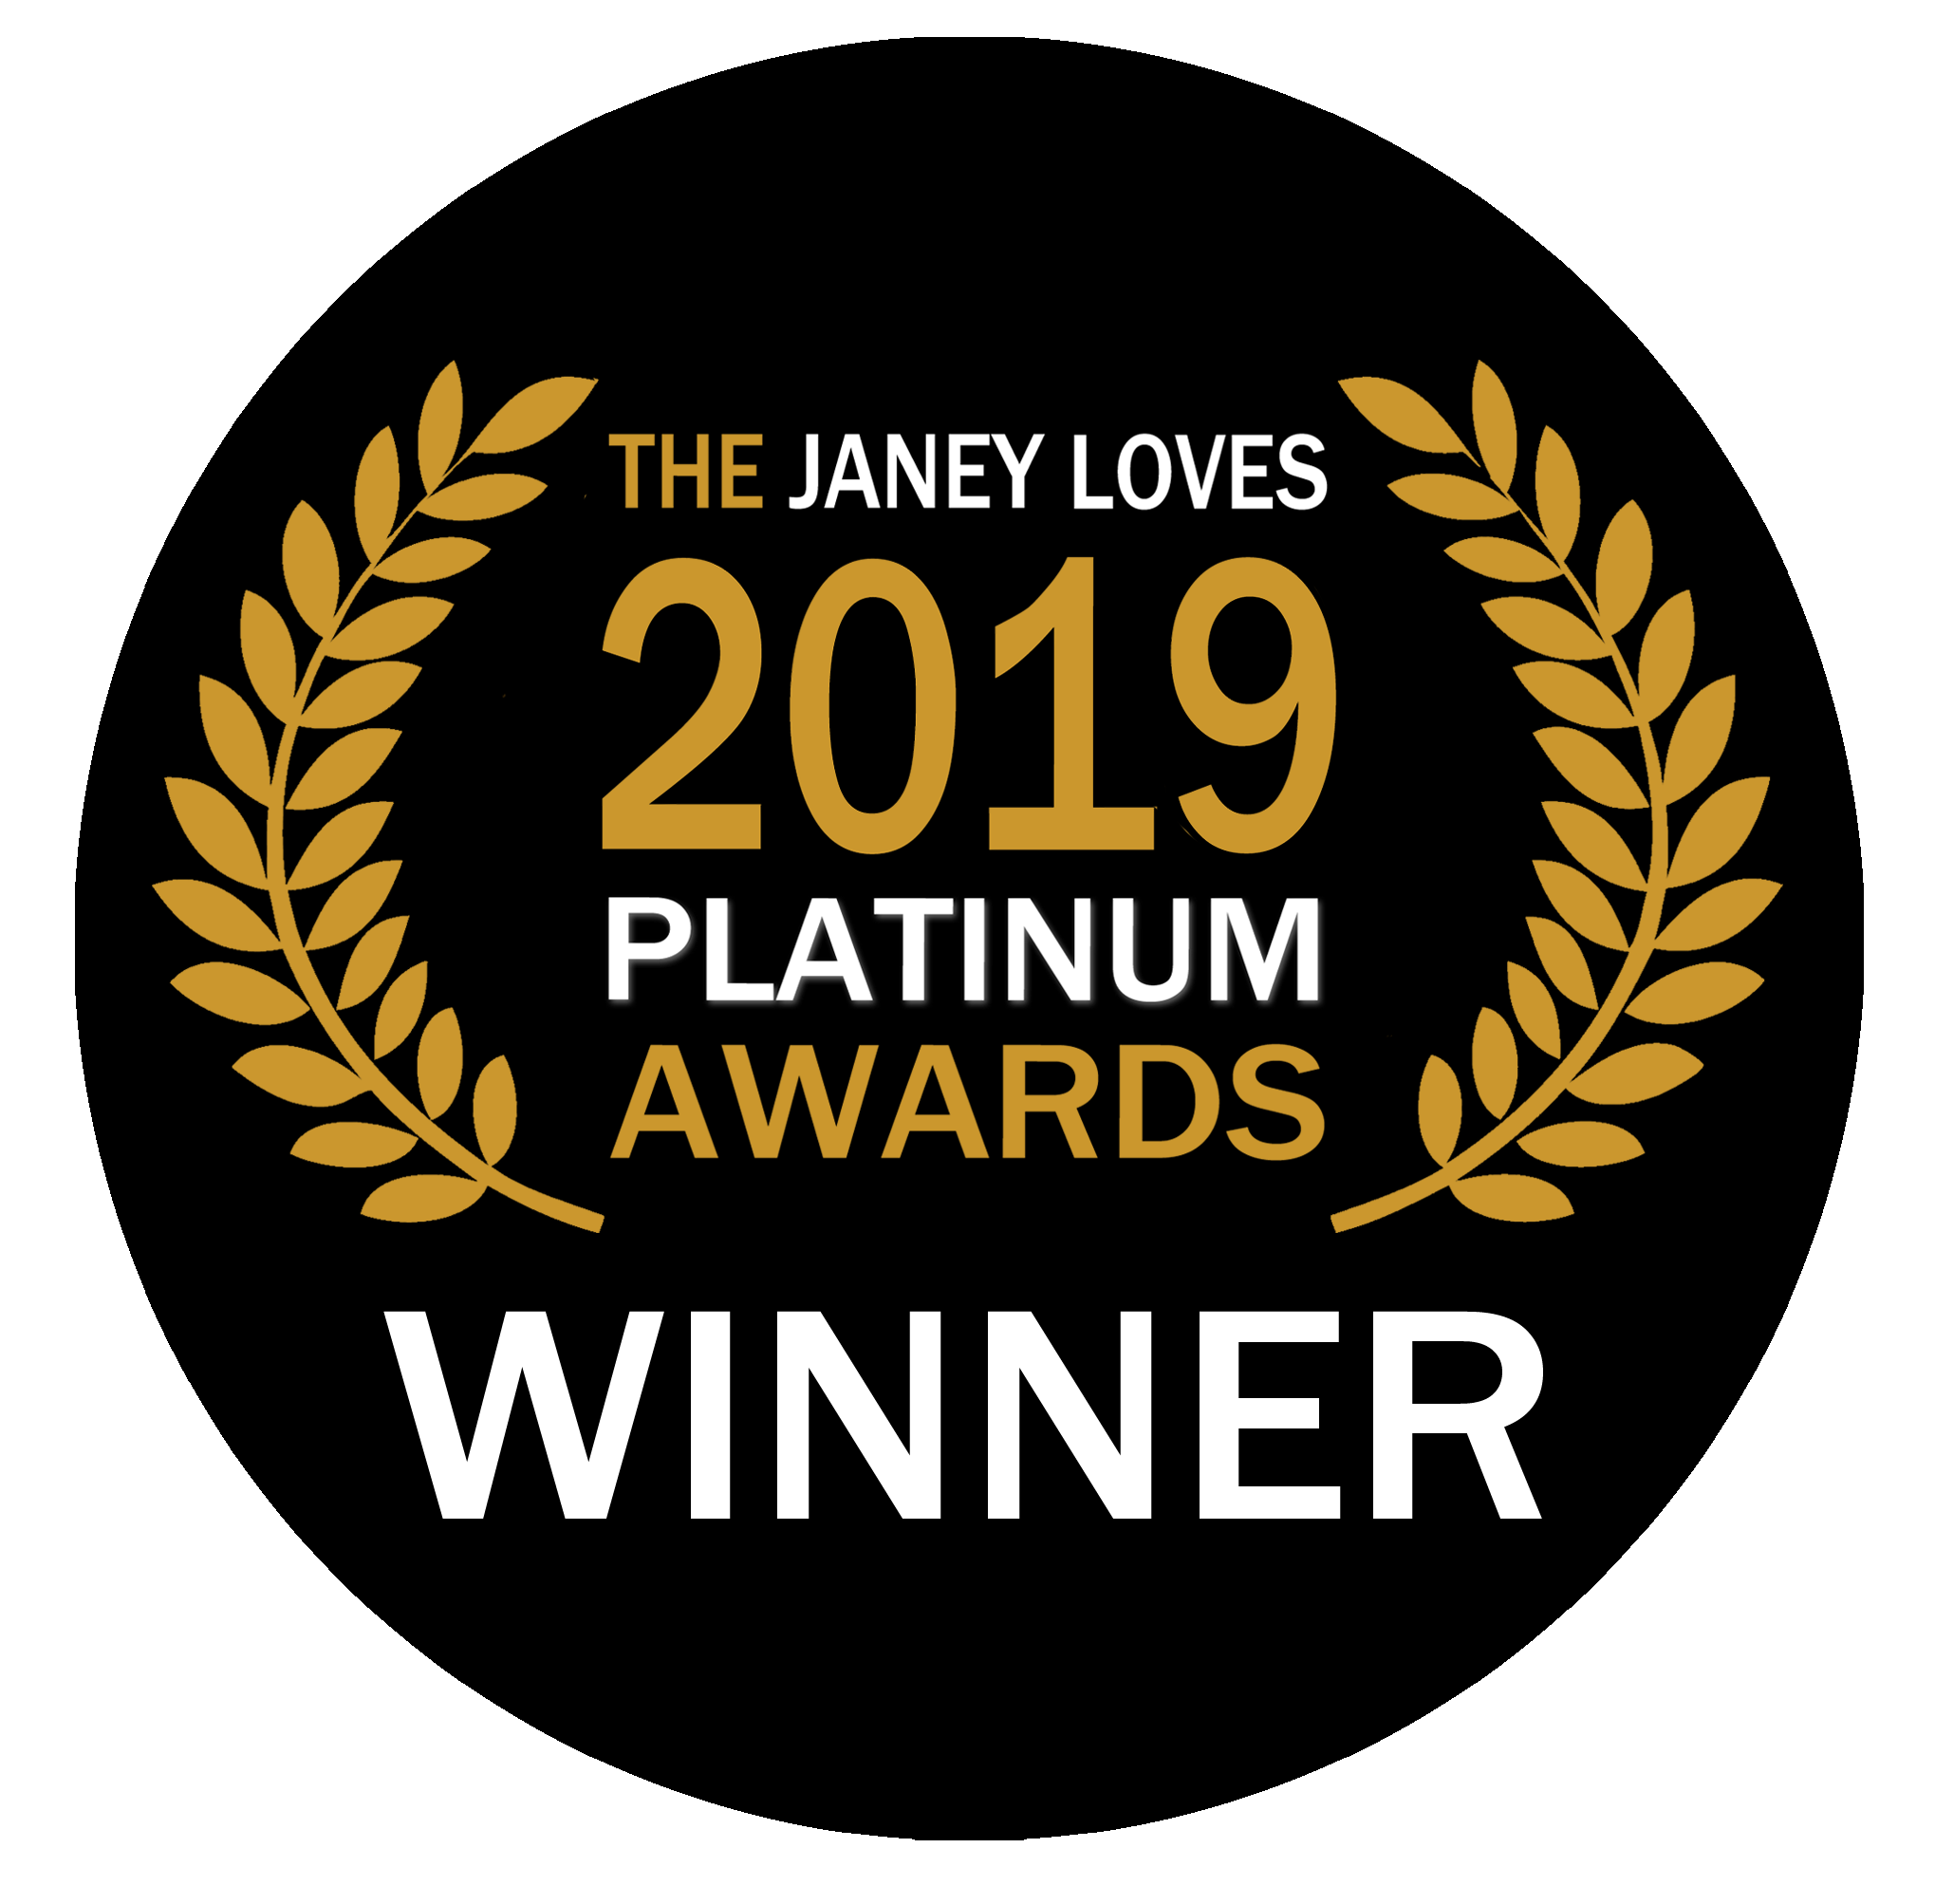 Janey Loves platinum award winner